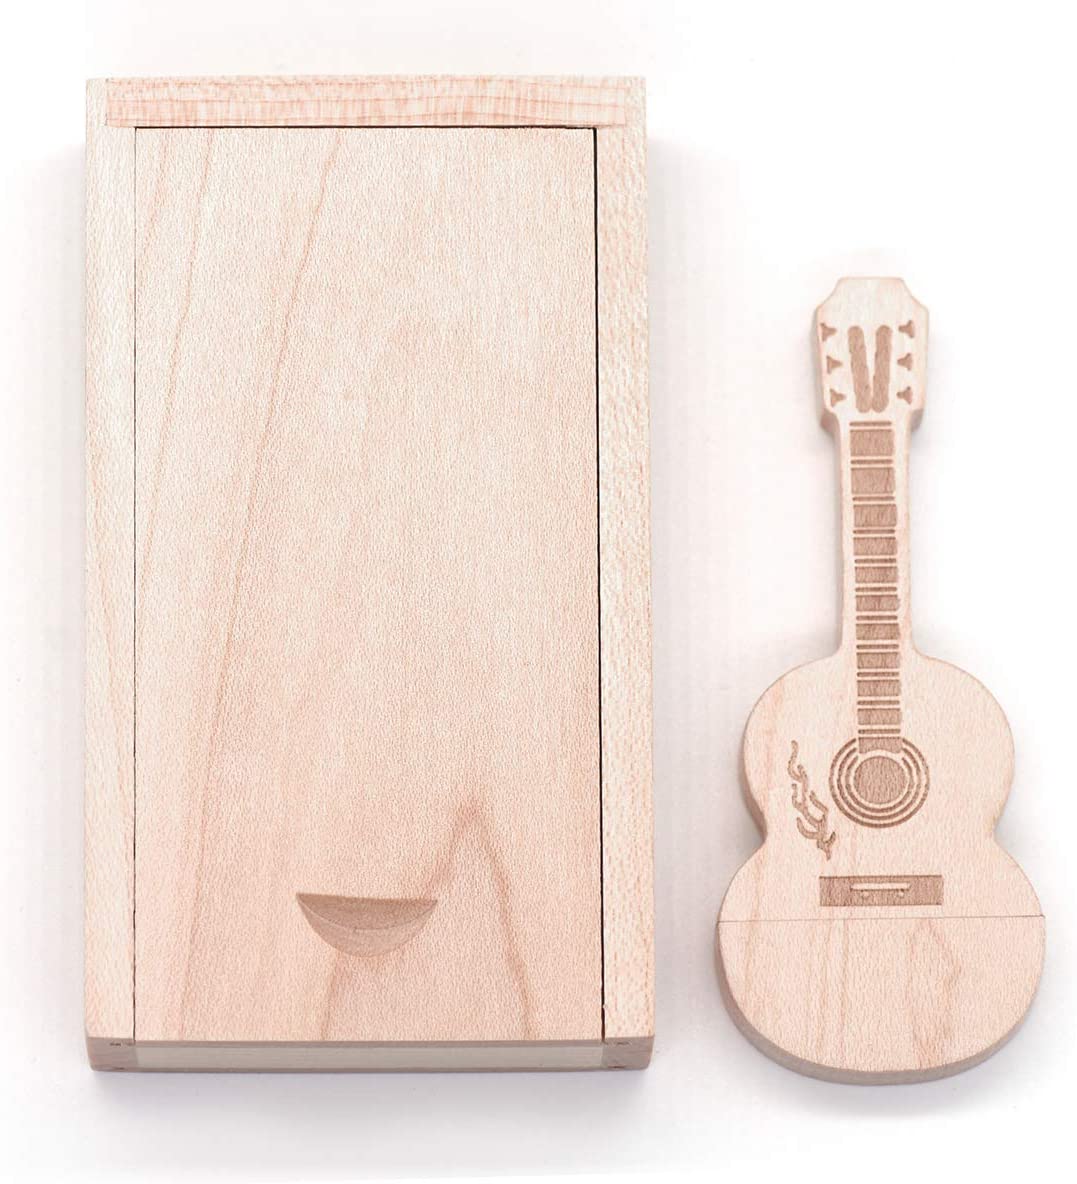 ออกแบบ Wood USB รุ่น Guitar ไม้ ที่มีรูปแบบและรูปทรงเครื่องดนตรี 3